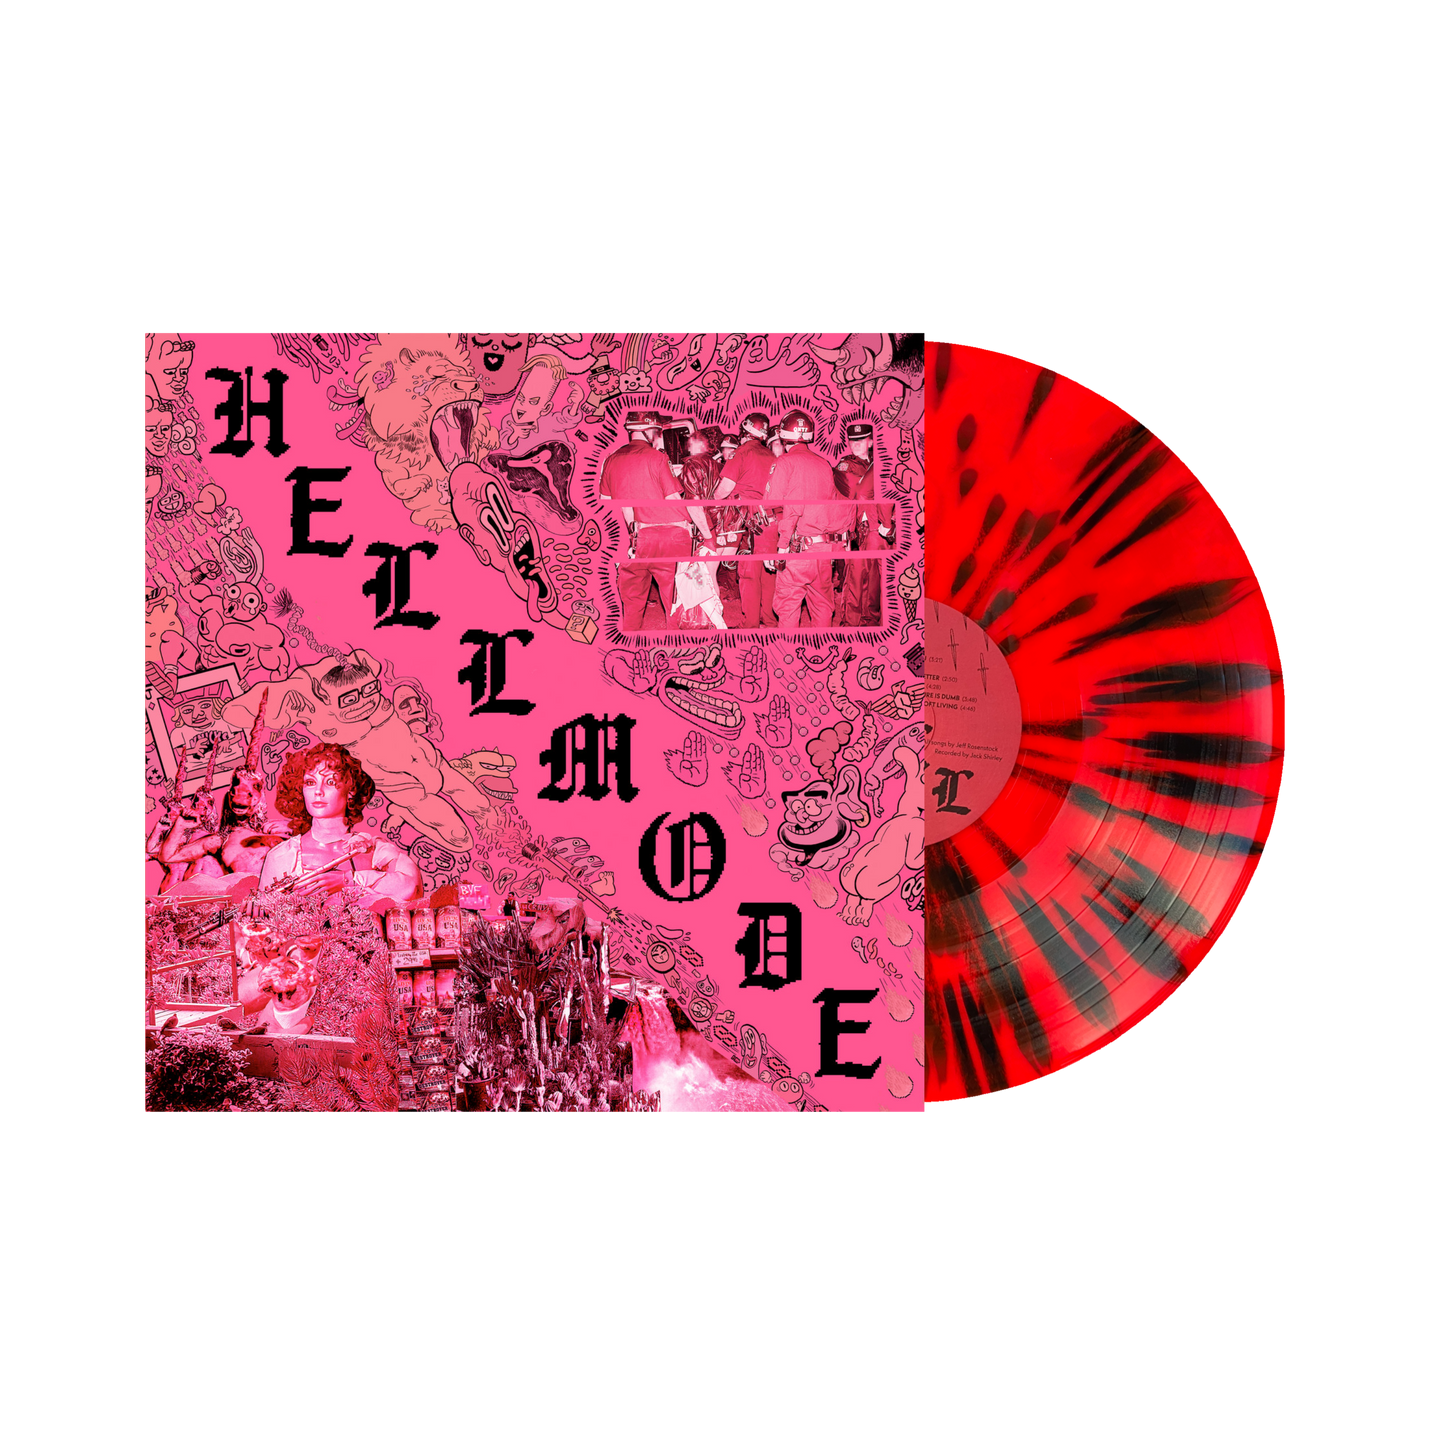 Jeff Rosenstock "Hellmode" LP